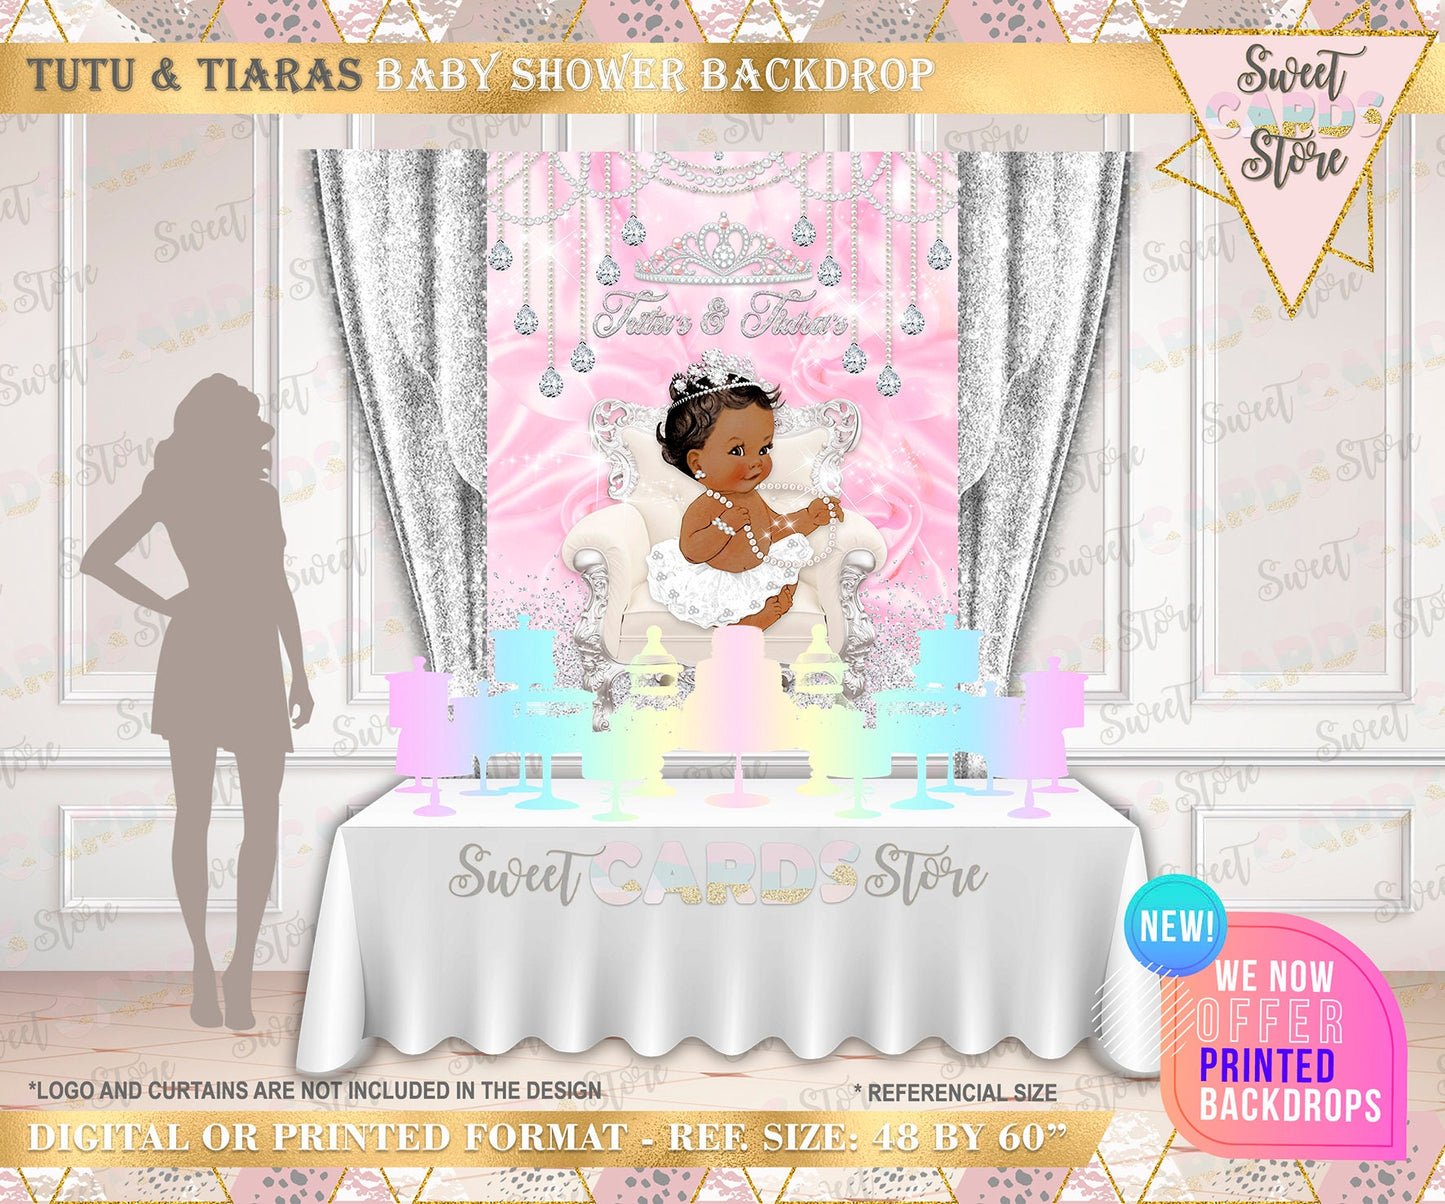 Tutus and Tiara's backdrop, tutu & tiara backdrop, tutu girl backdrop, Tutu princess backdrop, tutu tiaras pearls backdrop, Princess girl